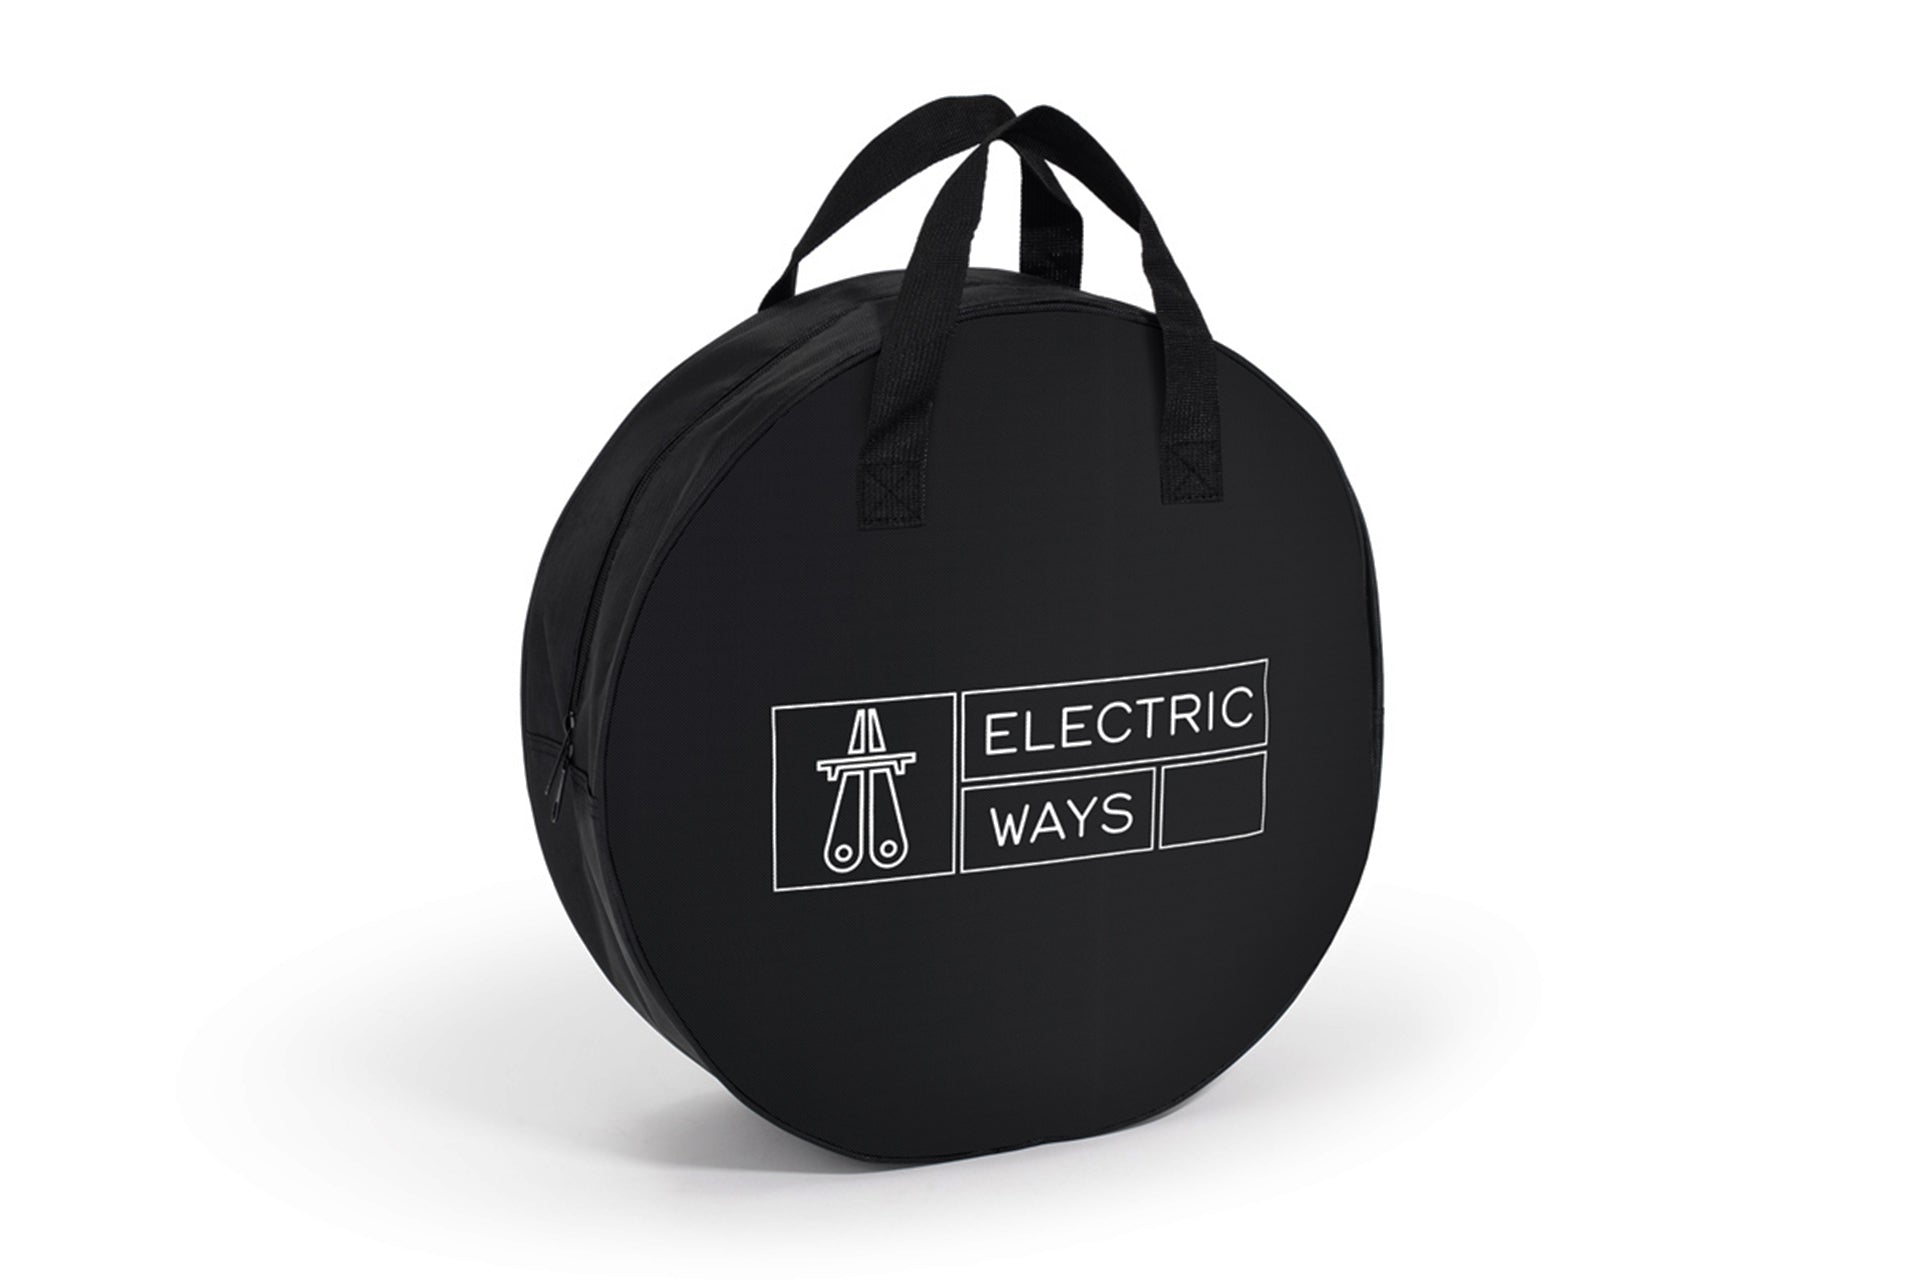 ELECTRIC-WAYS Tasche für ein Ladekabel